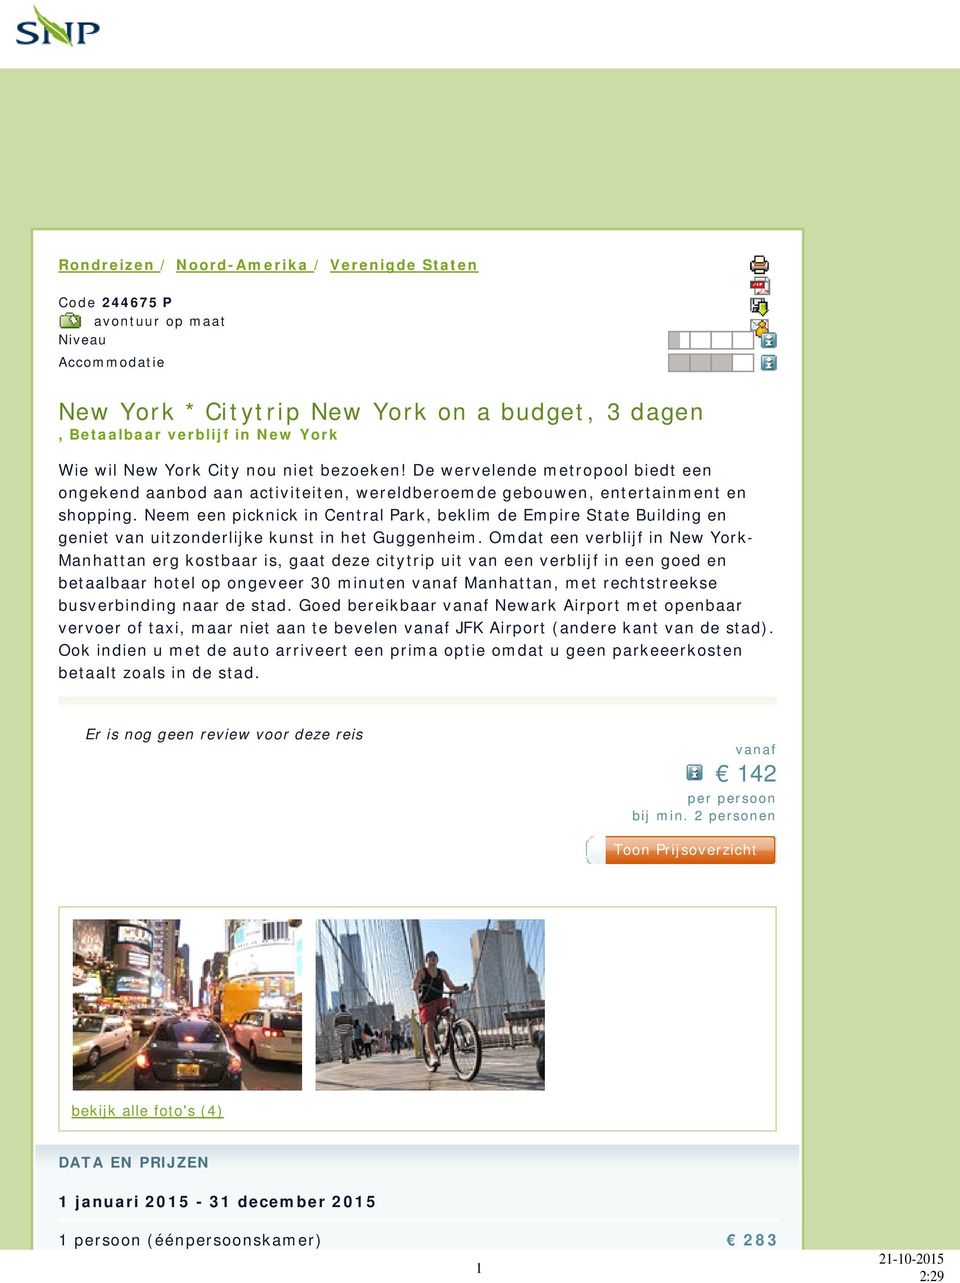 Neem een picknick in Central Park, beklim de Empire State Building en geniet van uitzonderlijke kunst in het Guggenheim.